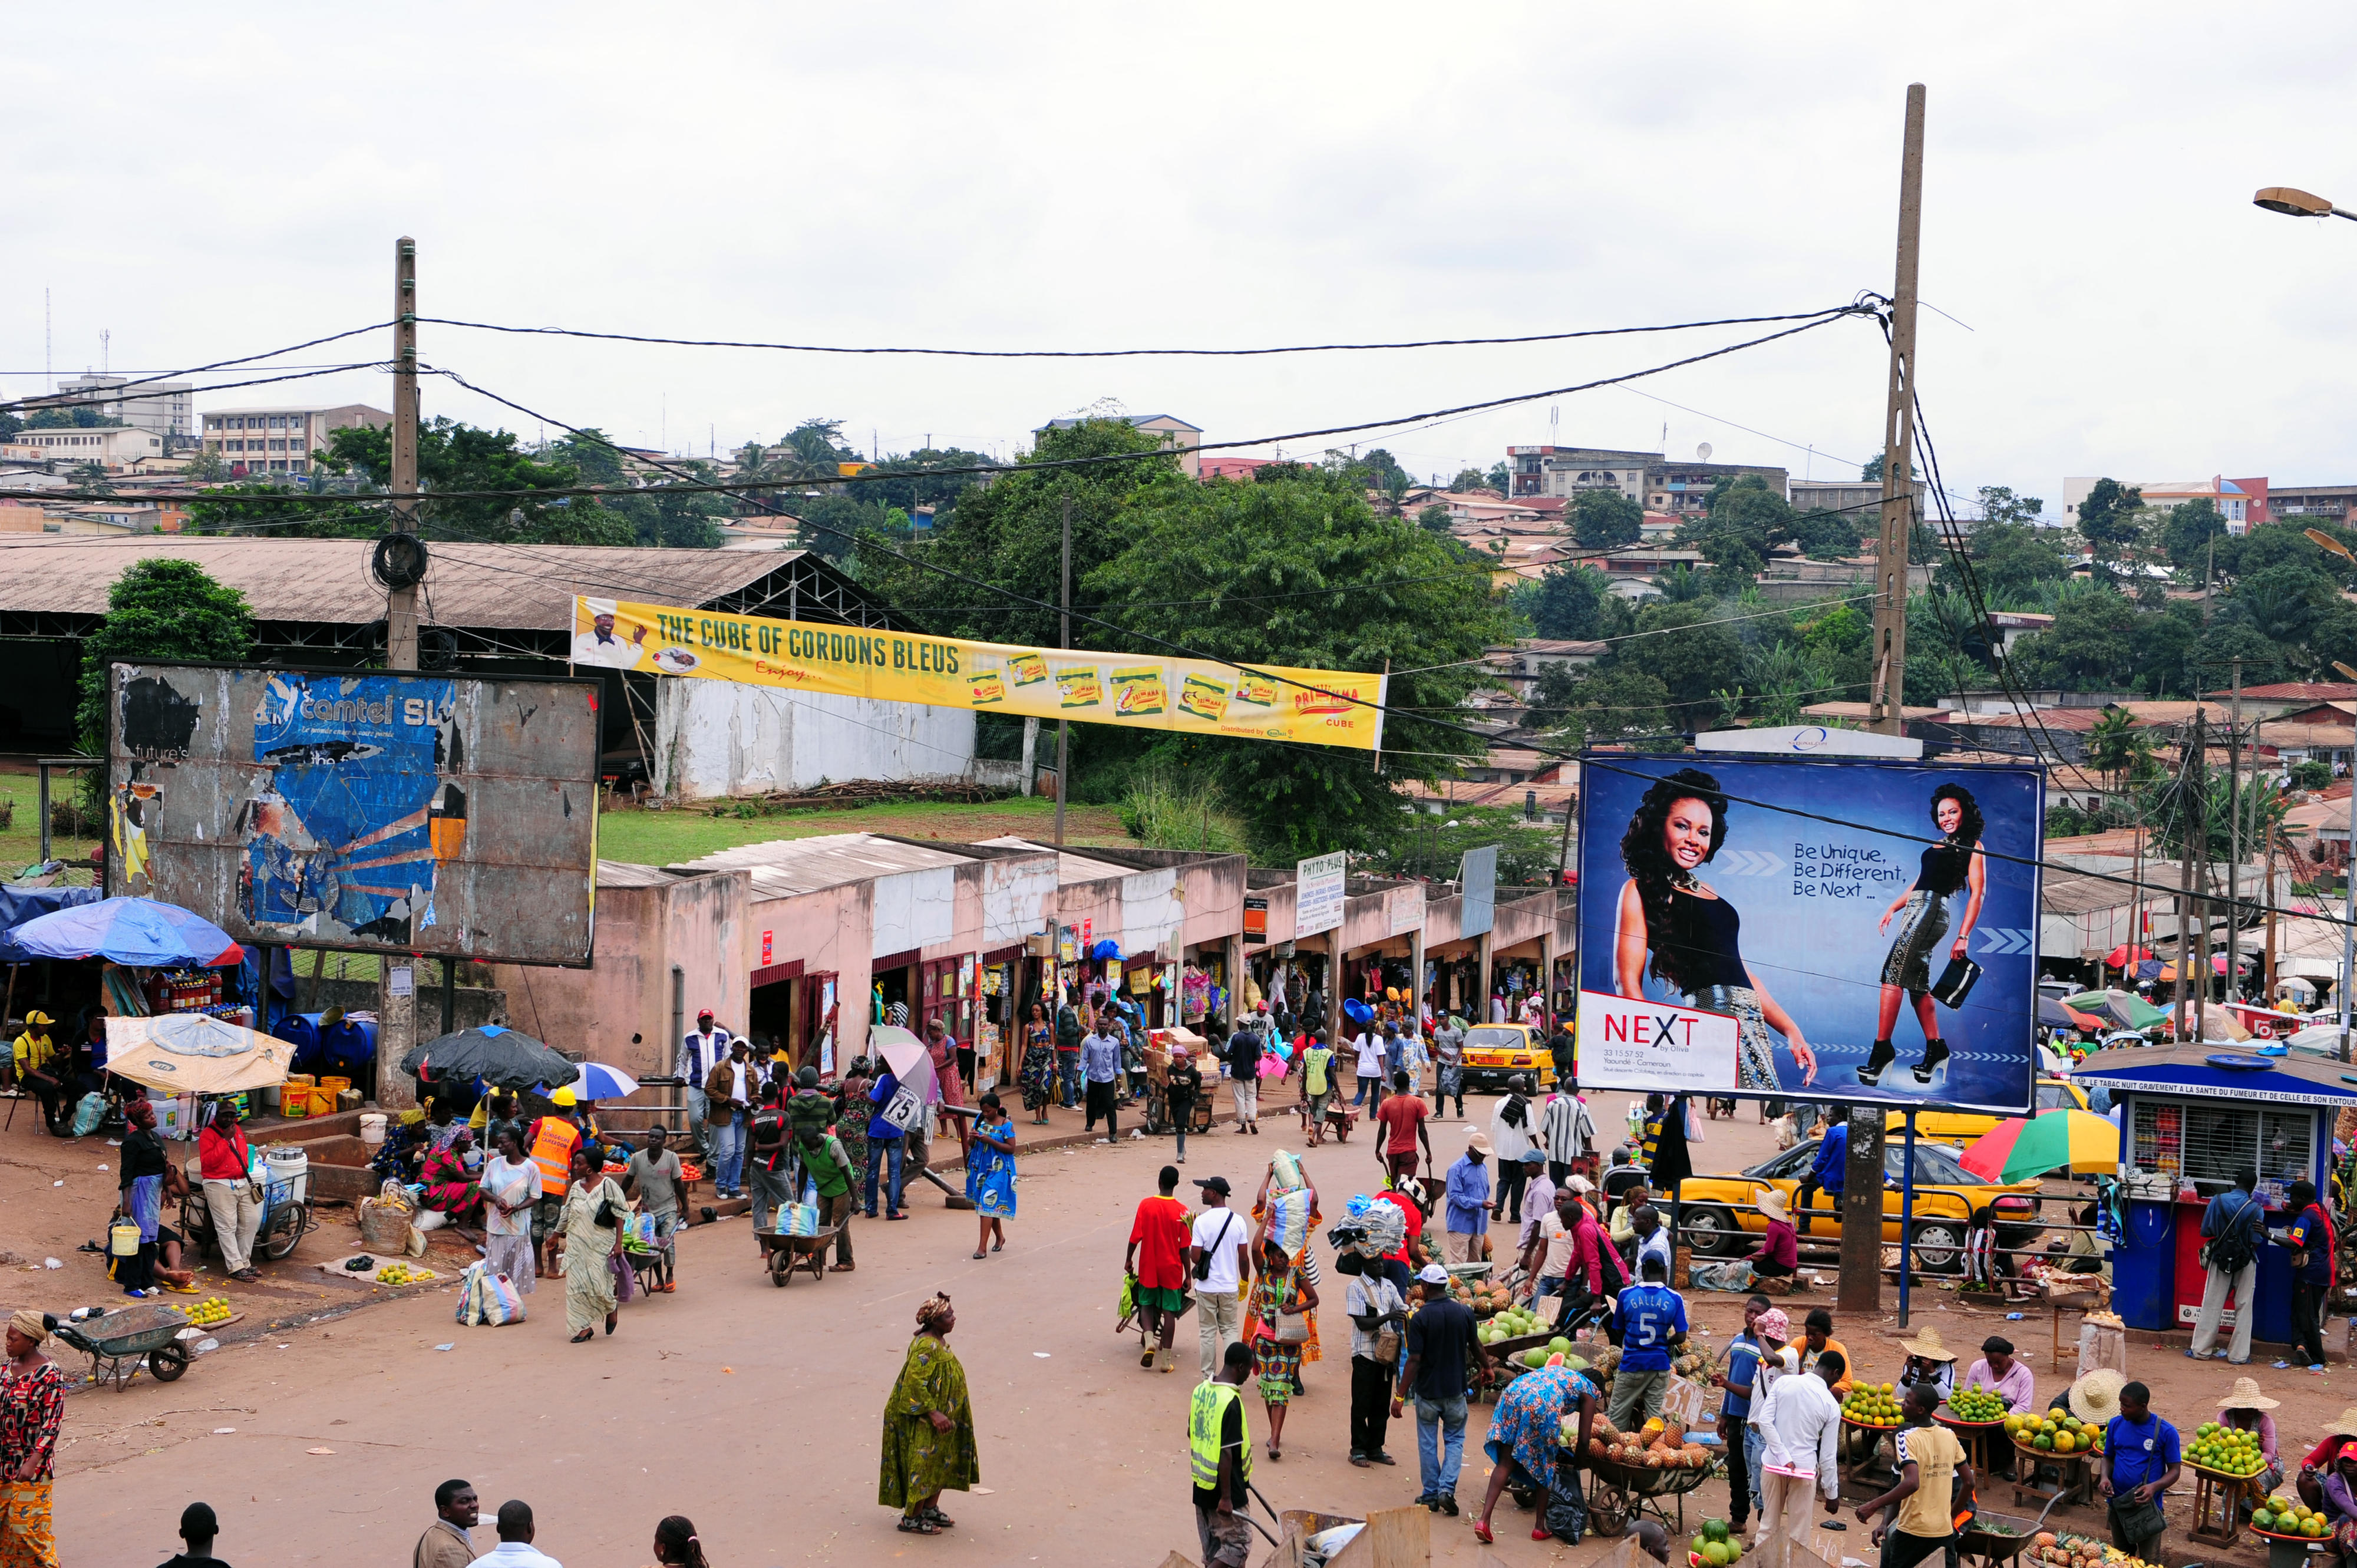  Street scene in Cameroon